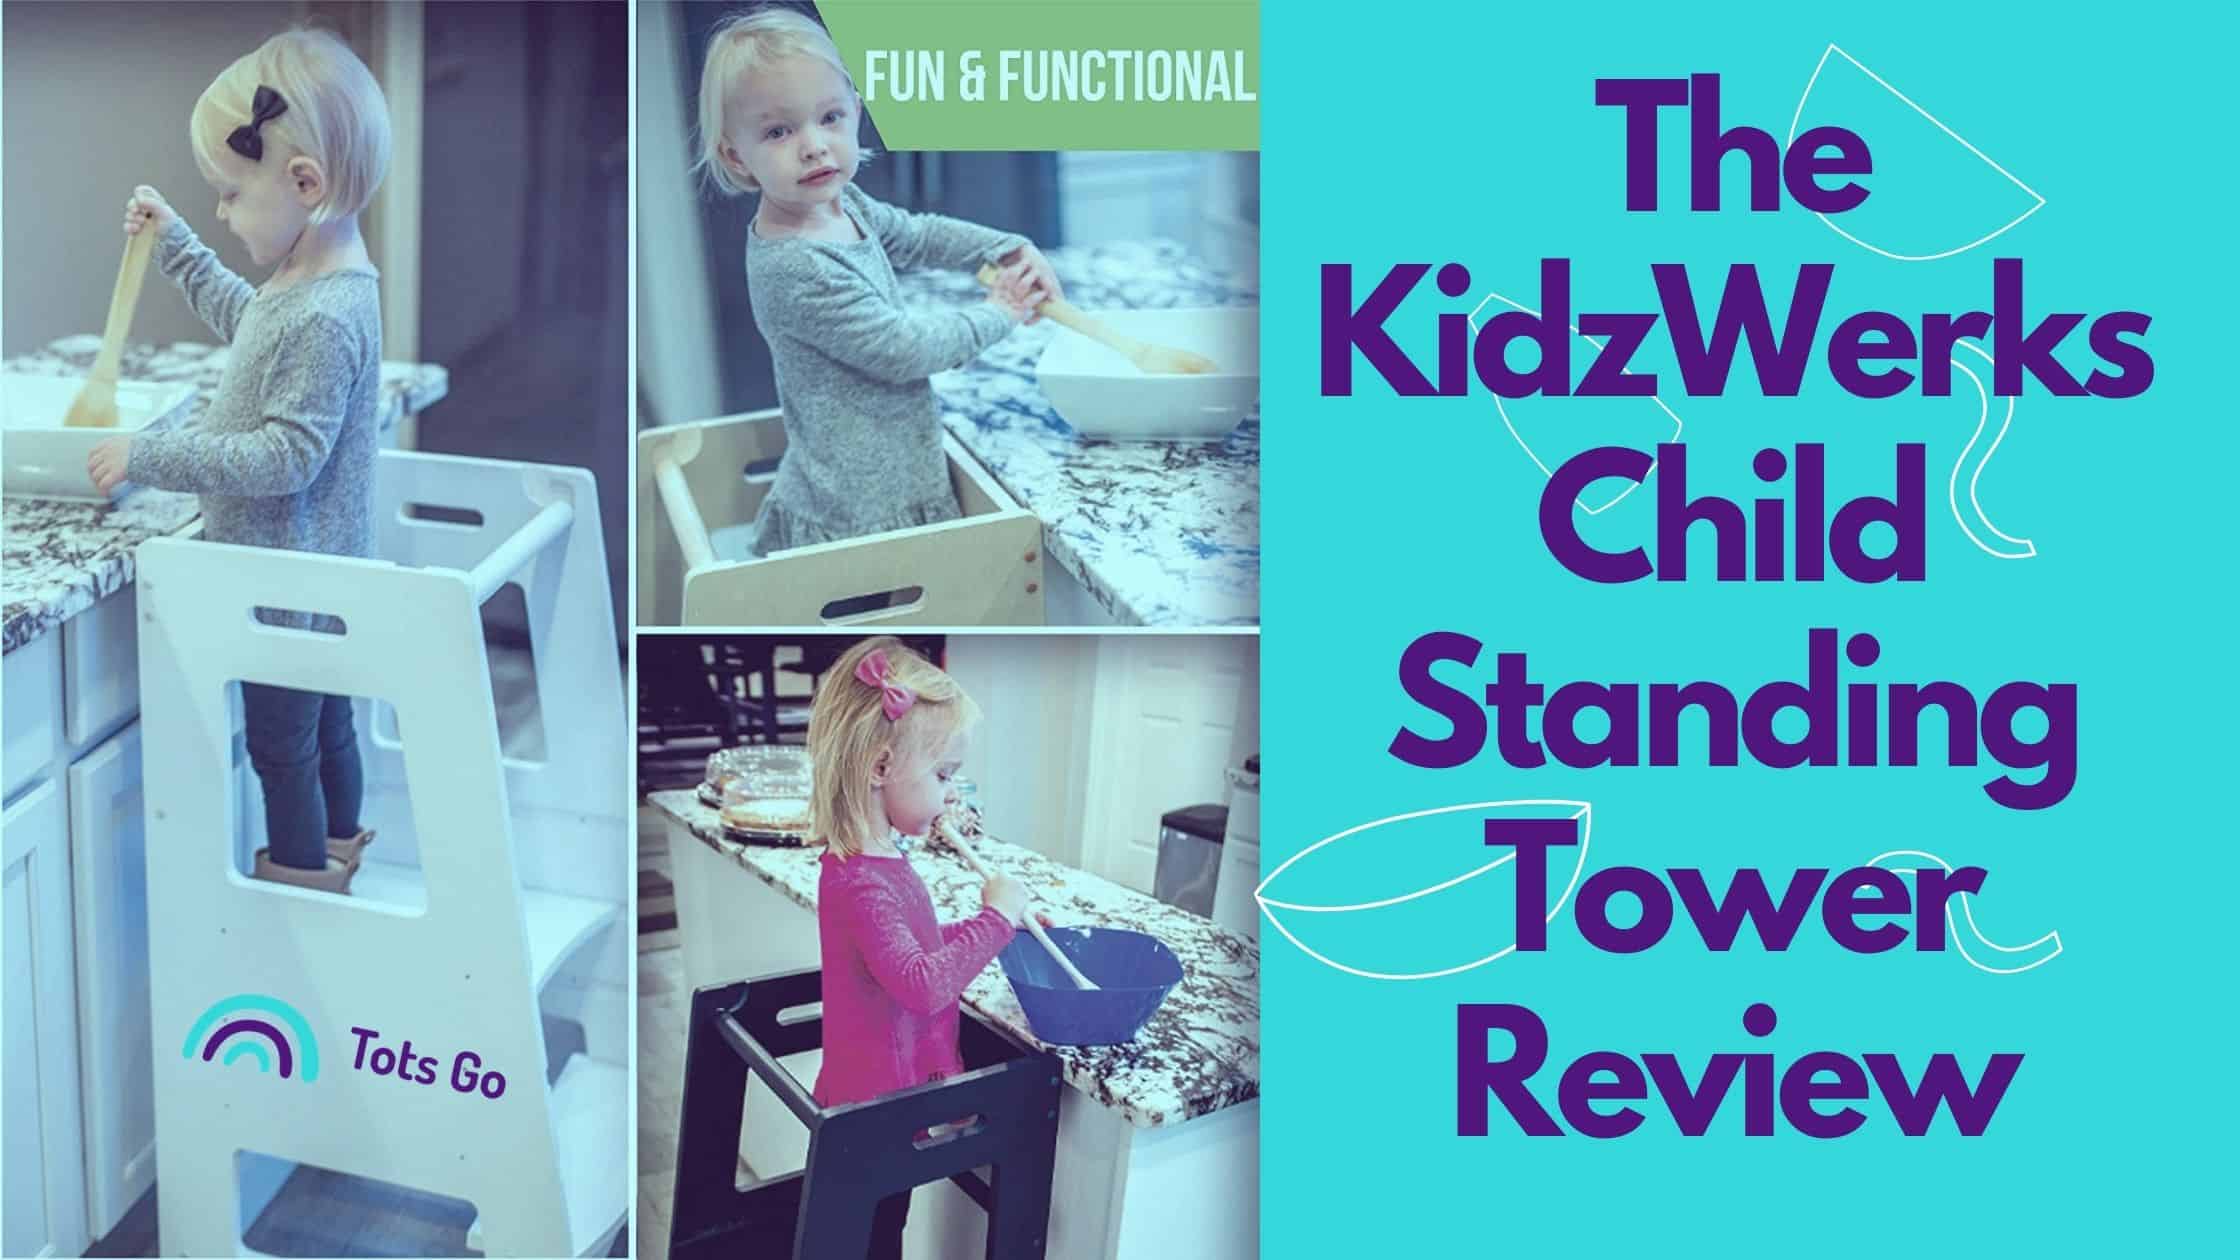 The KidzWerks Child Standing Tower Review